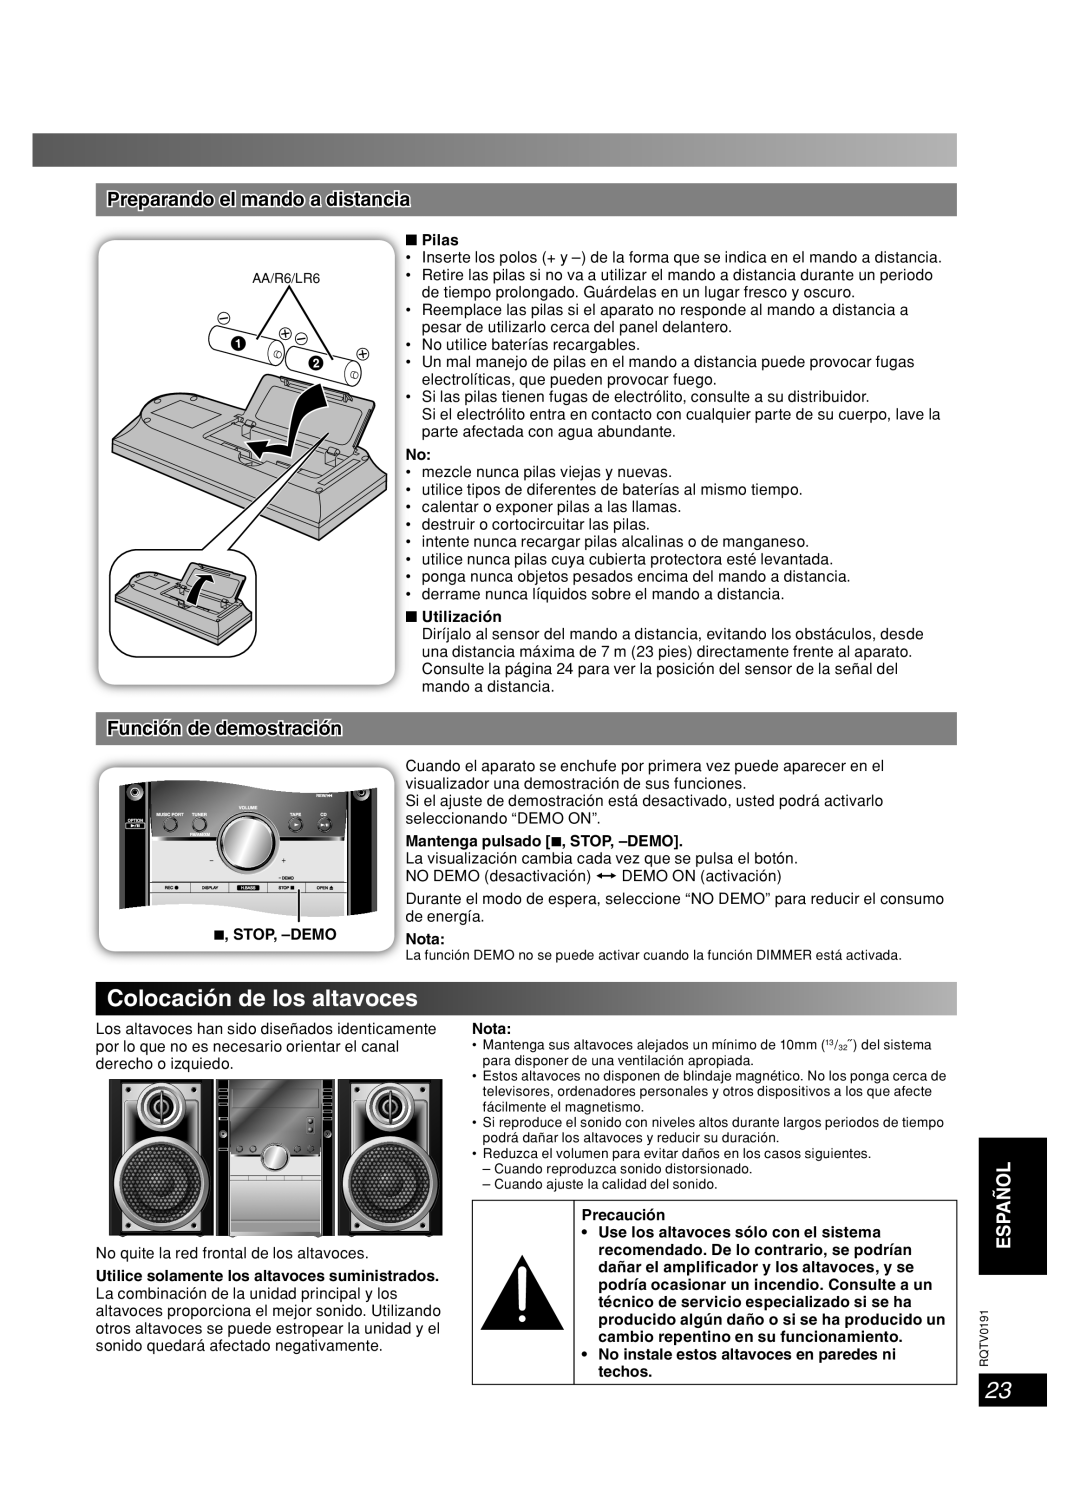 Panasonic SC-AK450 Colocación de los altavoces, Preparando el mando a distancia, Función de demostración, Español, Lang 